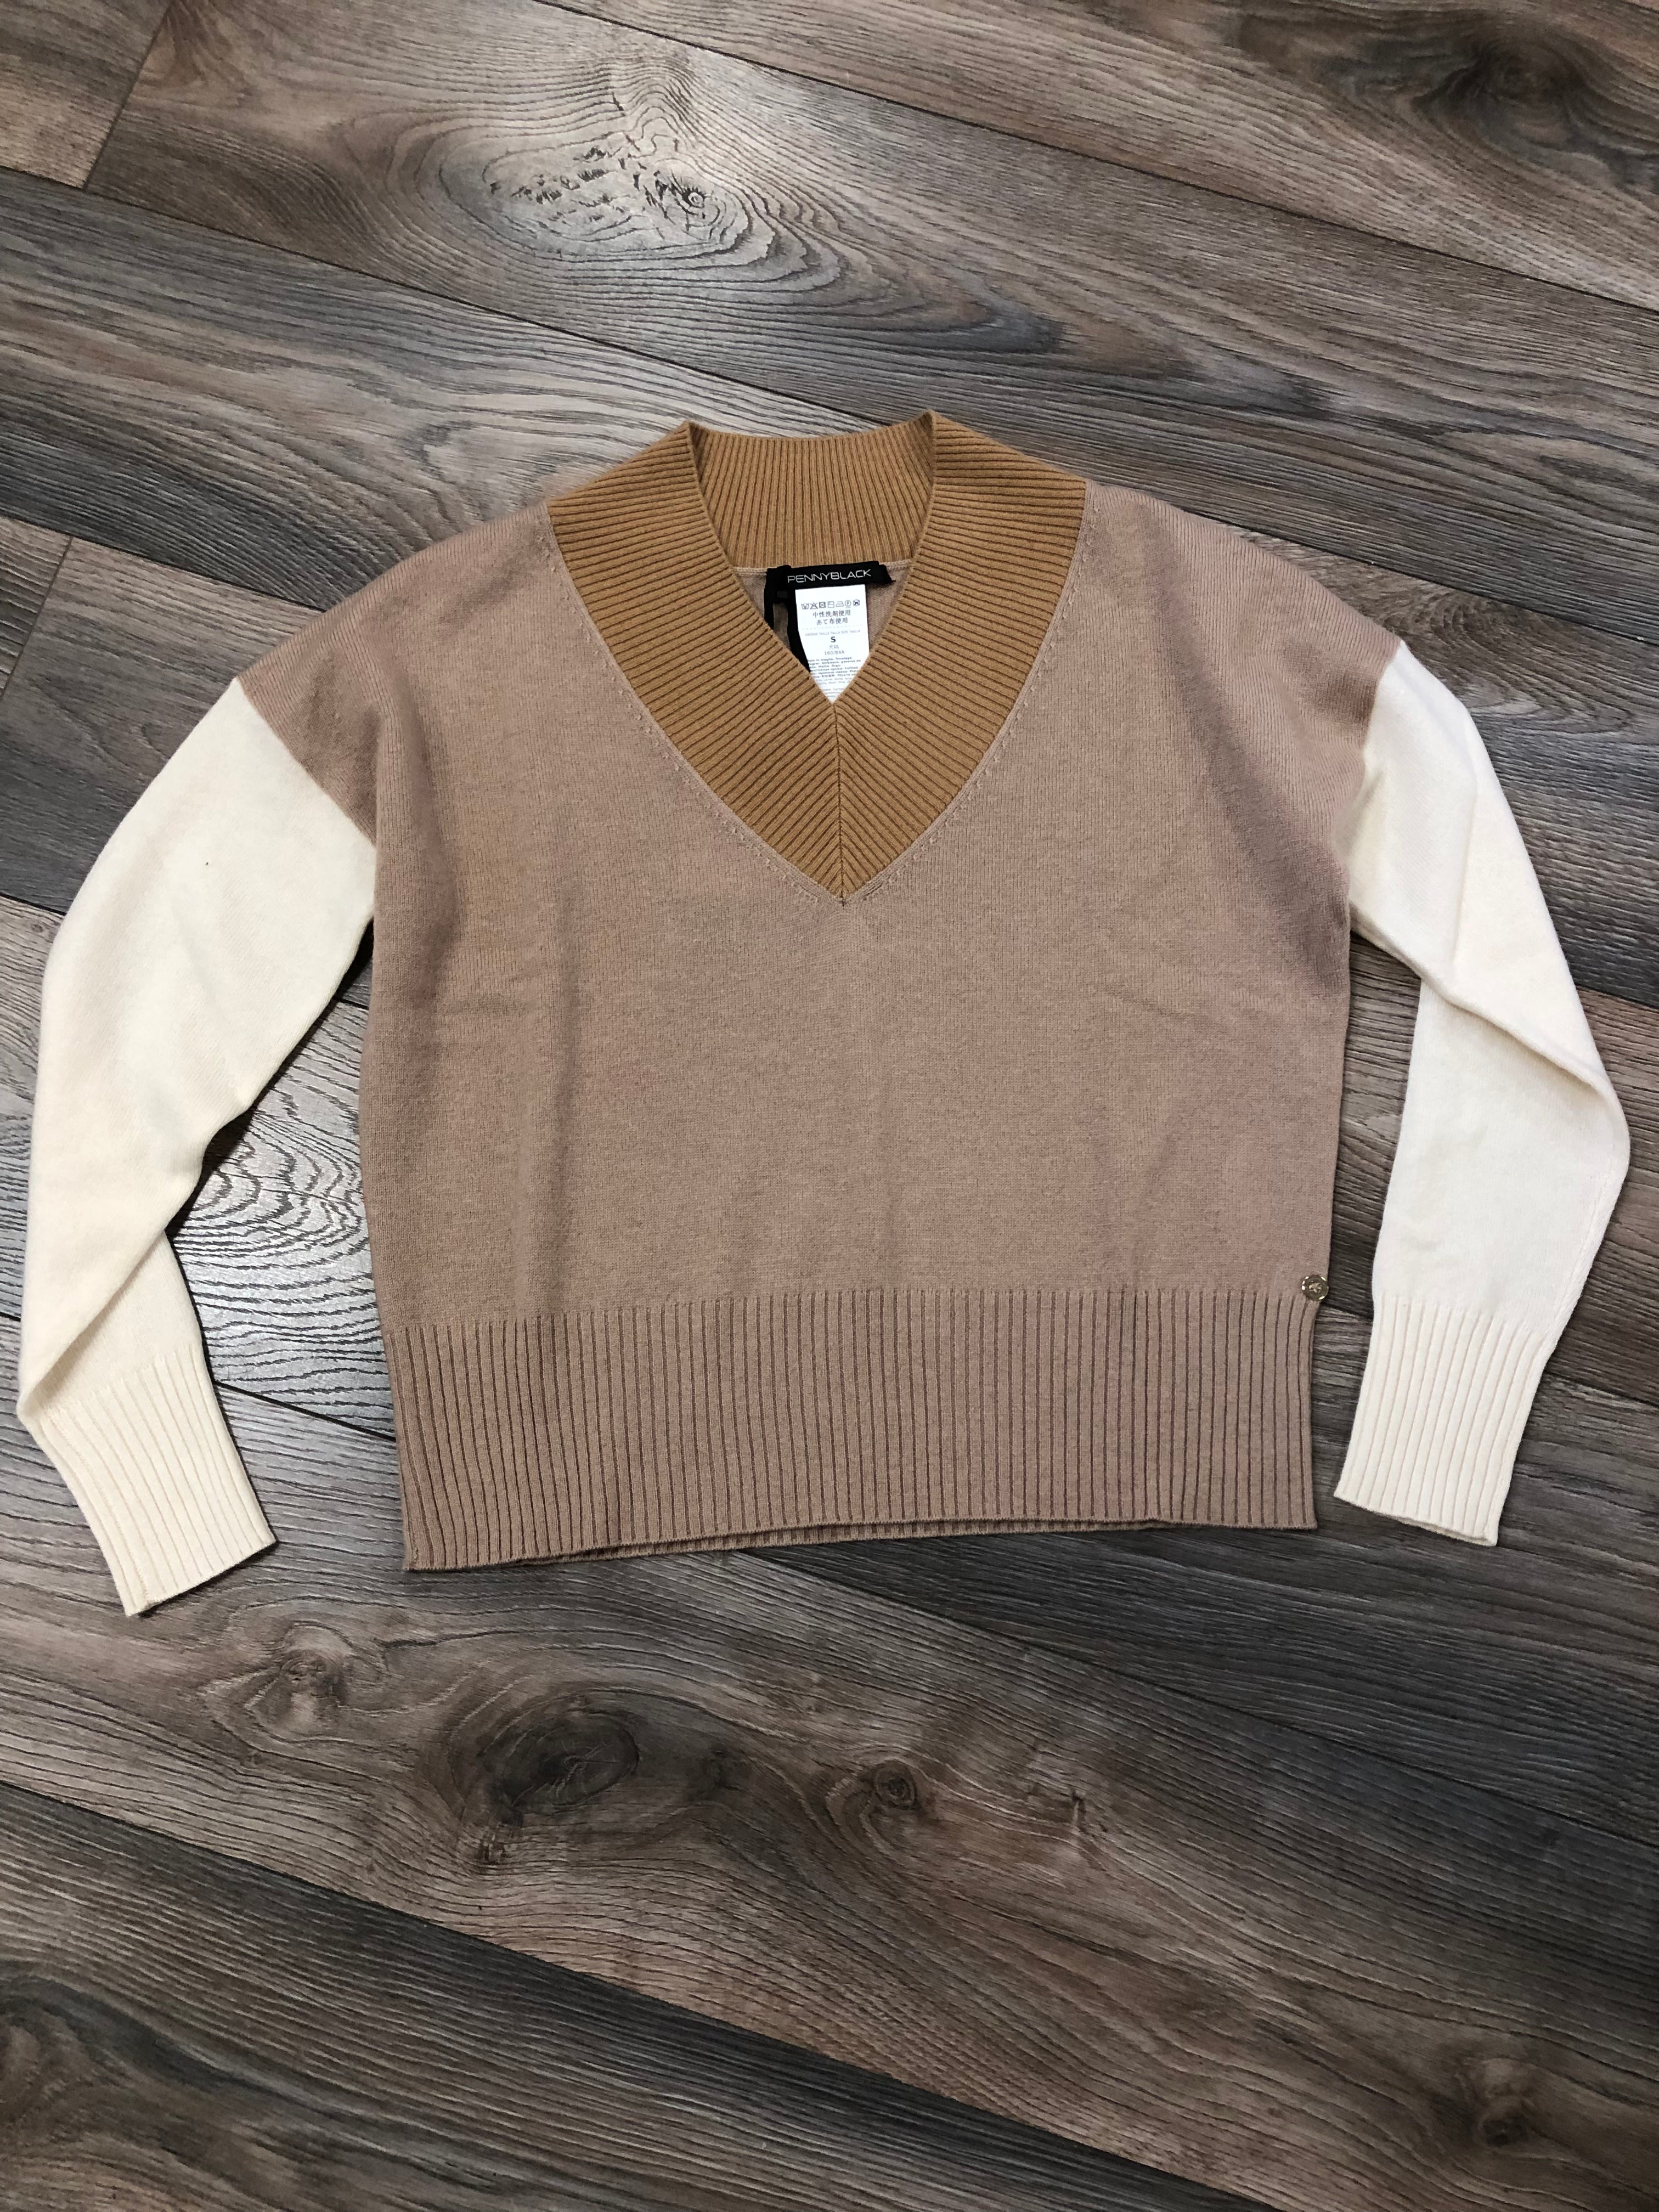 PB 0723 DATABILE Sweater